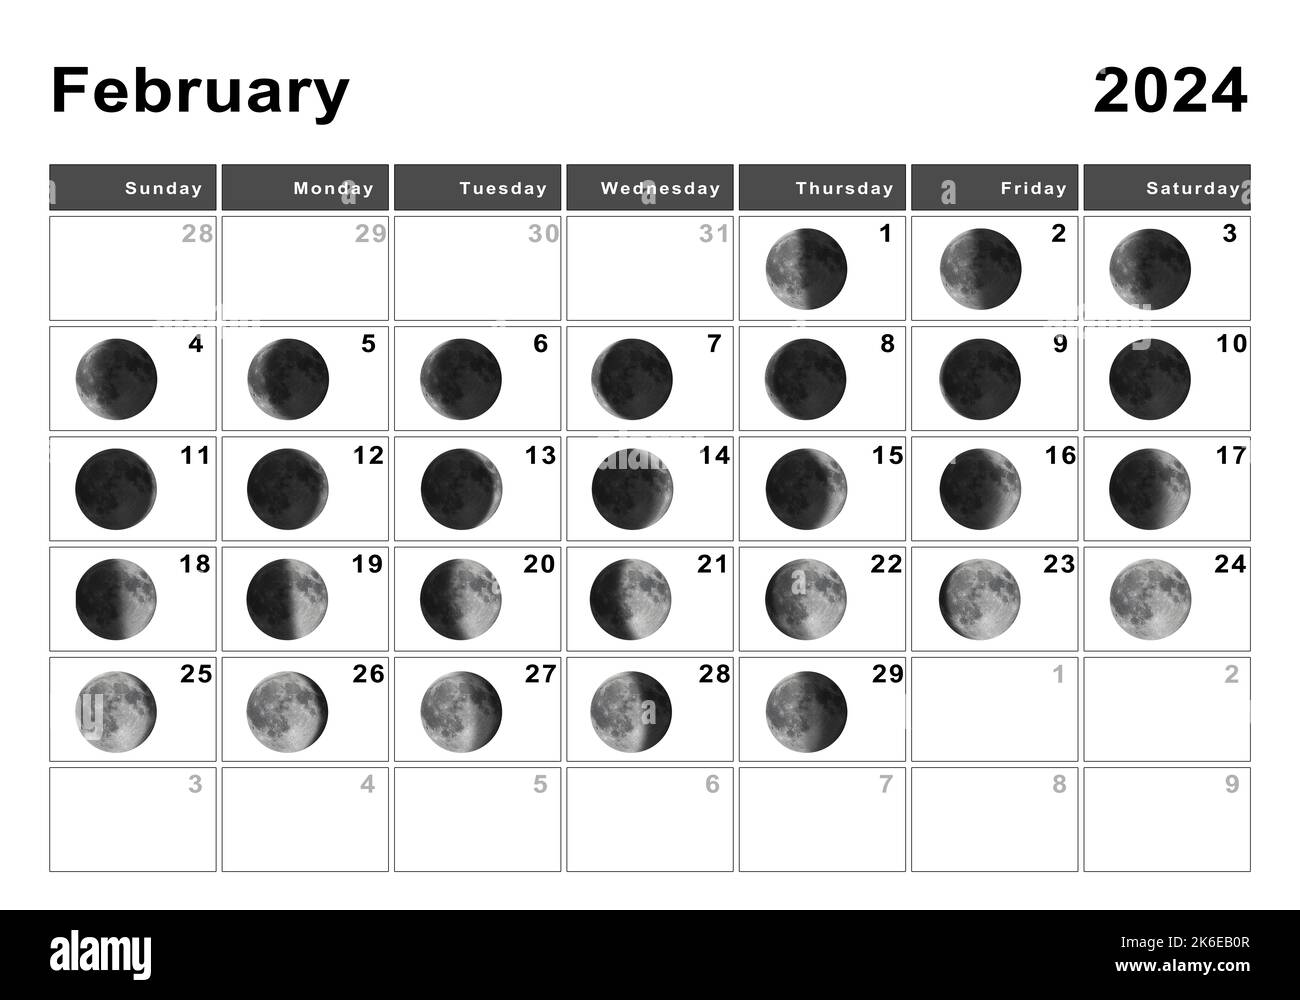 February 2024 Lunar Calendar Memorial Day 2024 Calendar